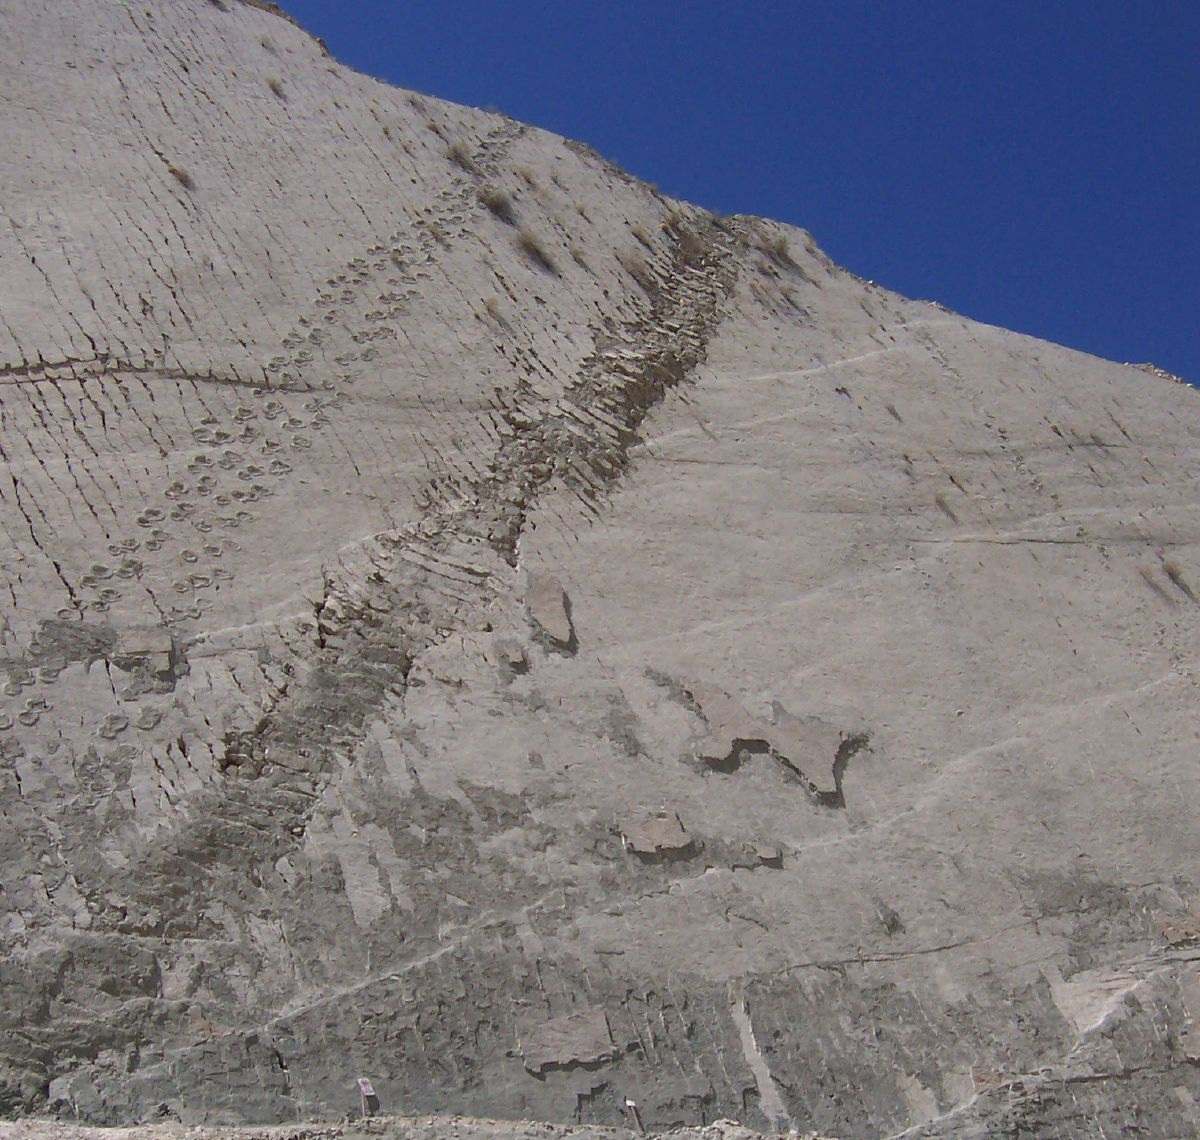 รอยเท้าบนผนัง: ไดโนเสาร์ปีนหน้าผาในโบลิเวียจริงหรือ? 6